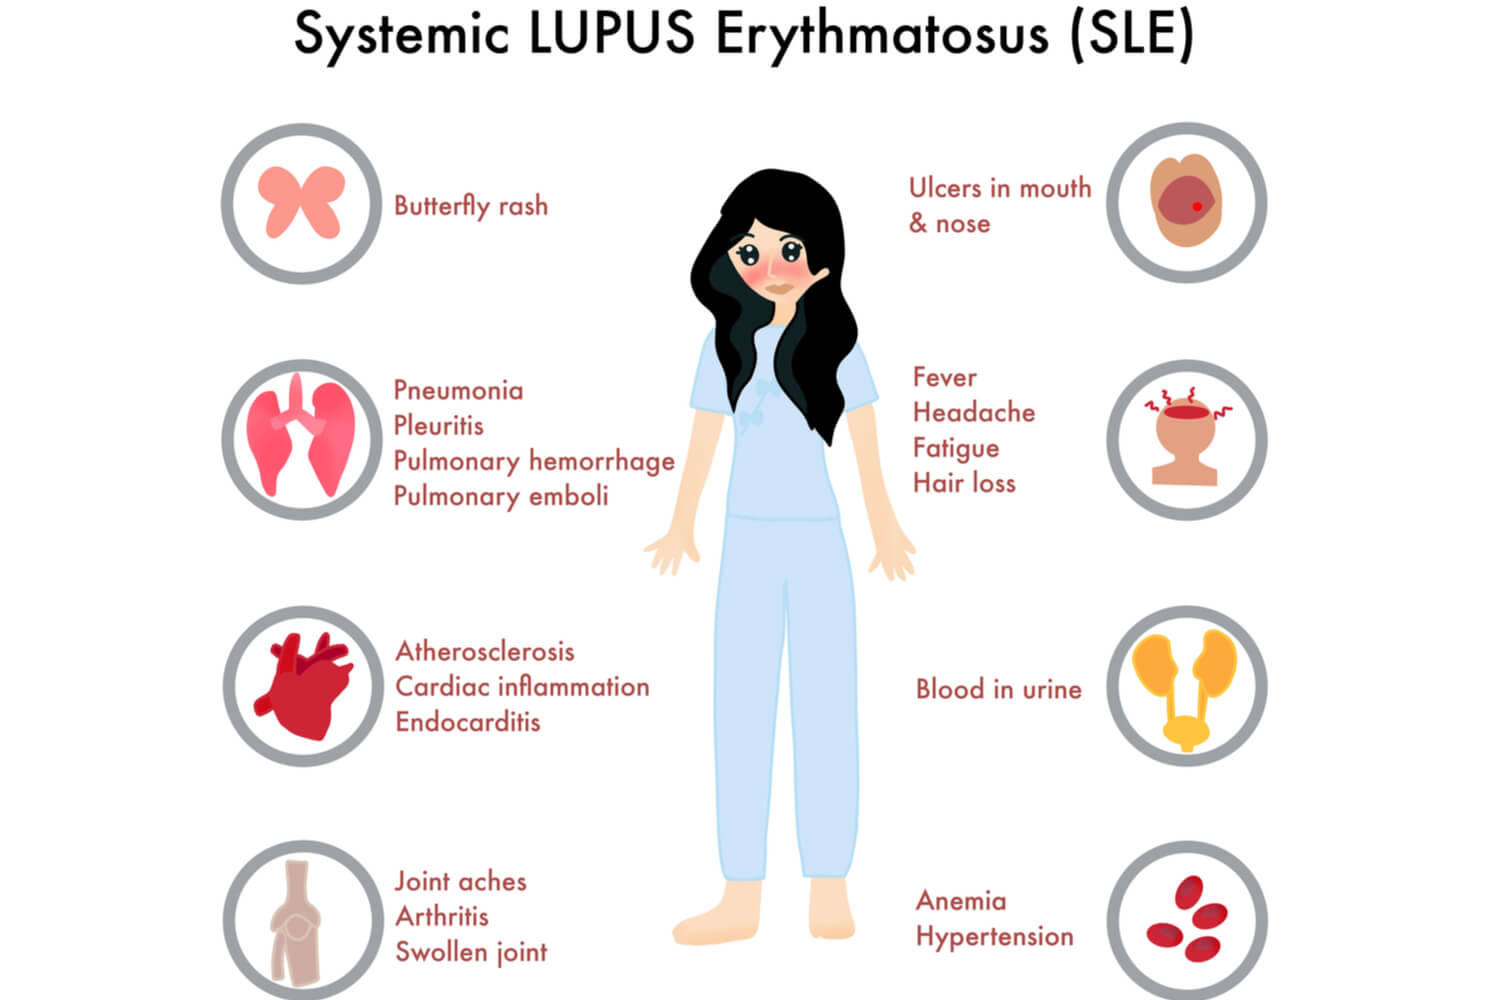 Symptoms of Systemic Lupus Erythematosus in Children